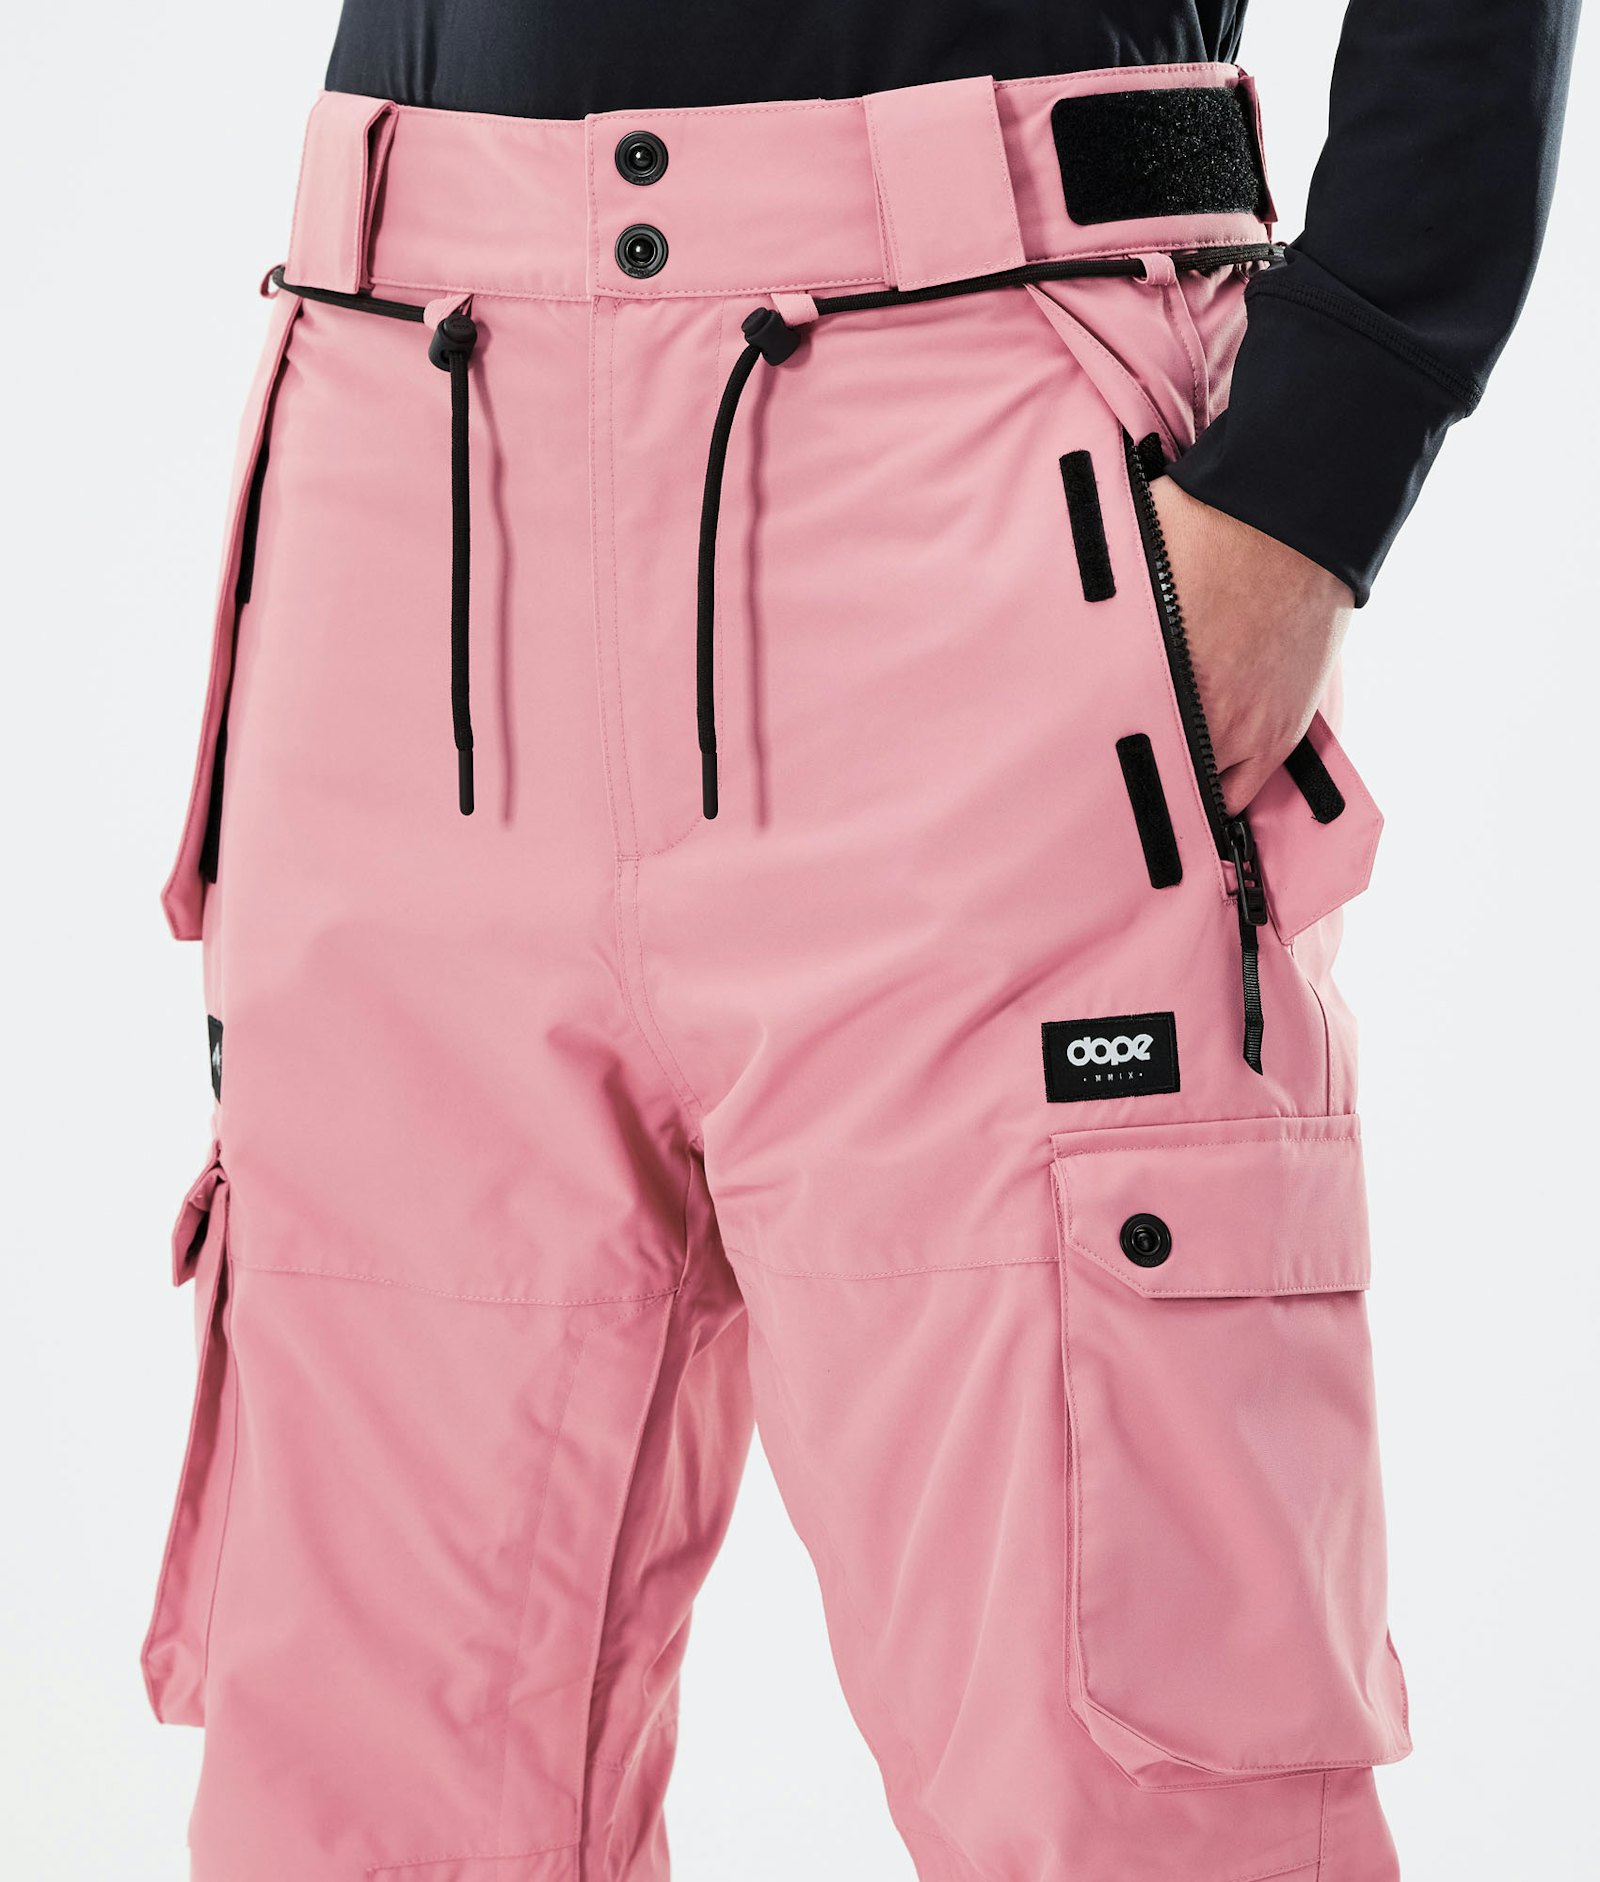 Iconic W 2021 Ski Pants Women Pink